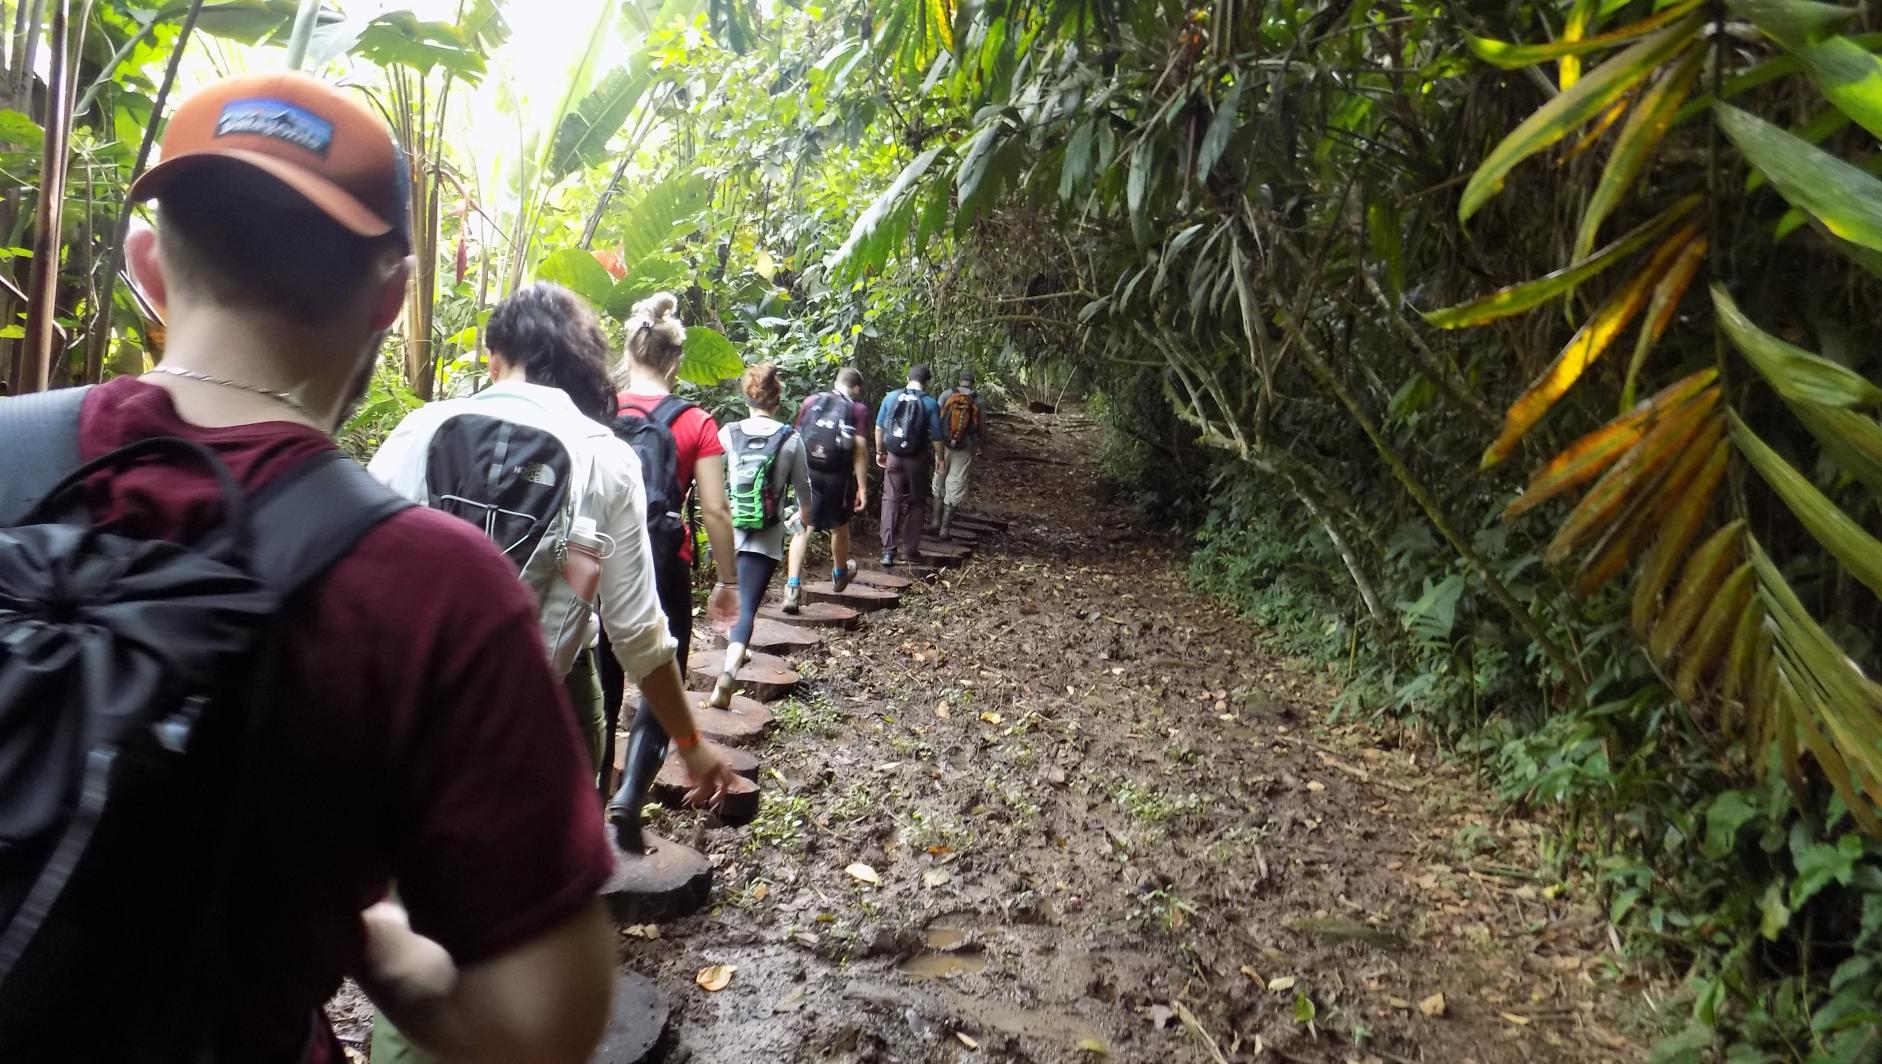 Students walk through Costa Rica wilderness